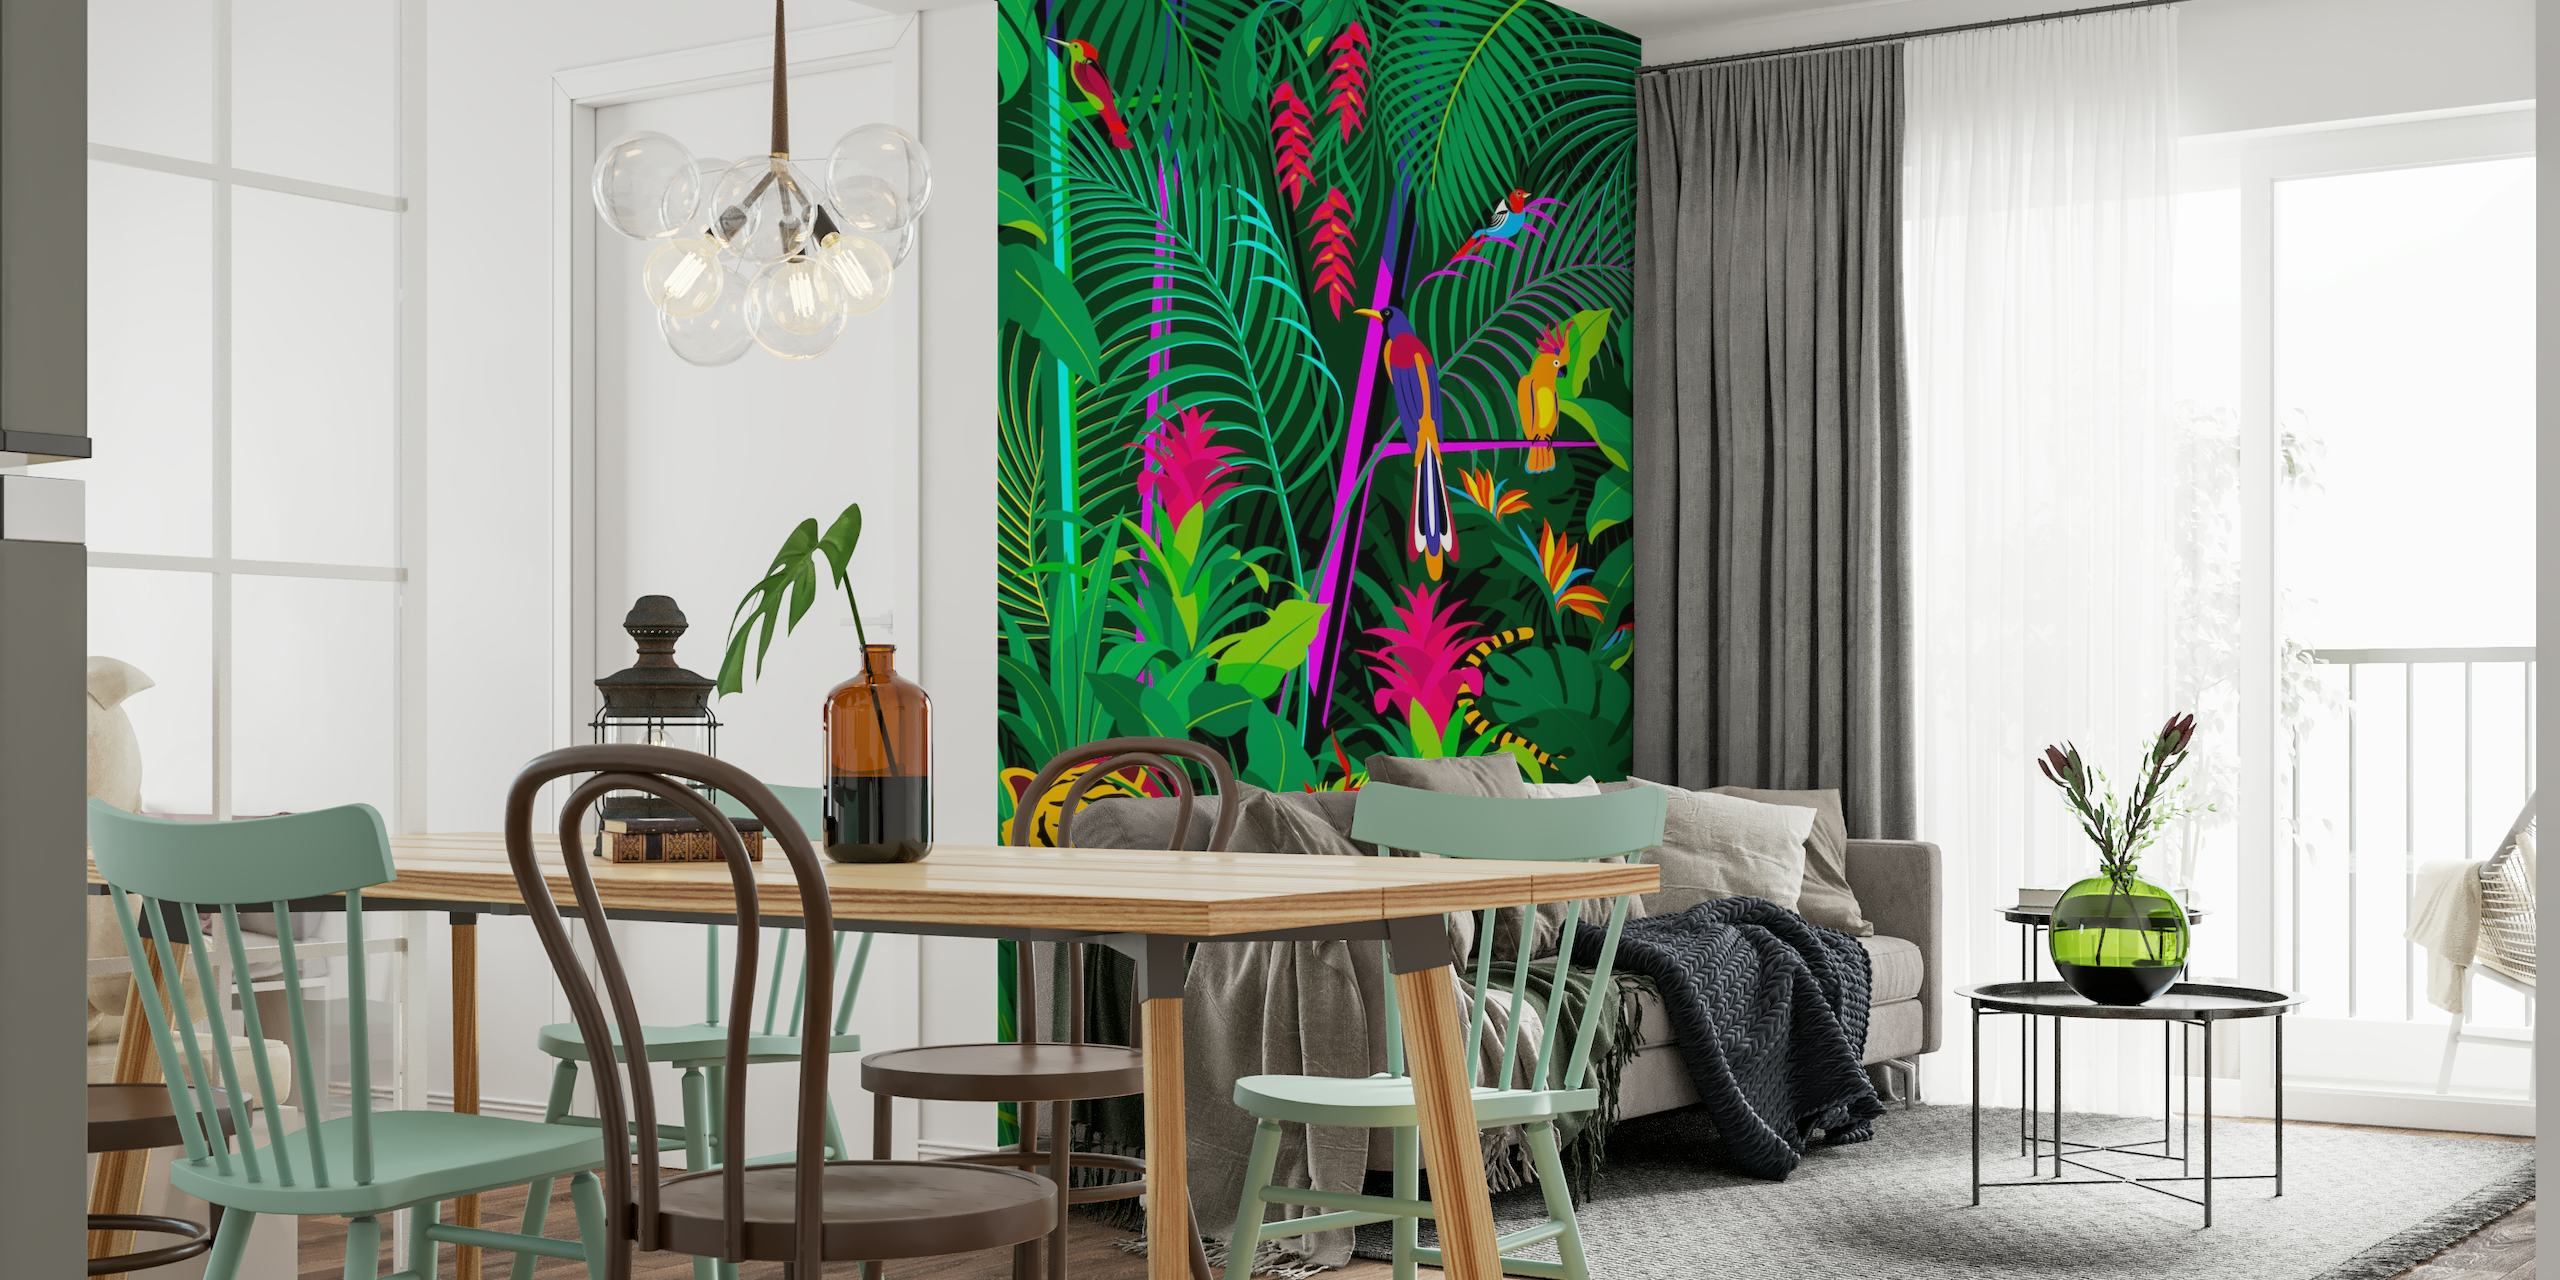 Tropische jungle muurschildering met dicht groen gebladerte, kleurrijke bloemen en een verborgen tijger